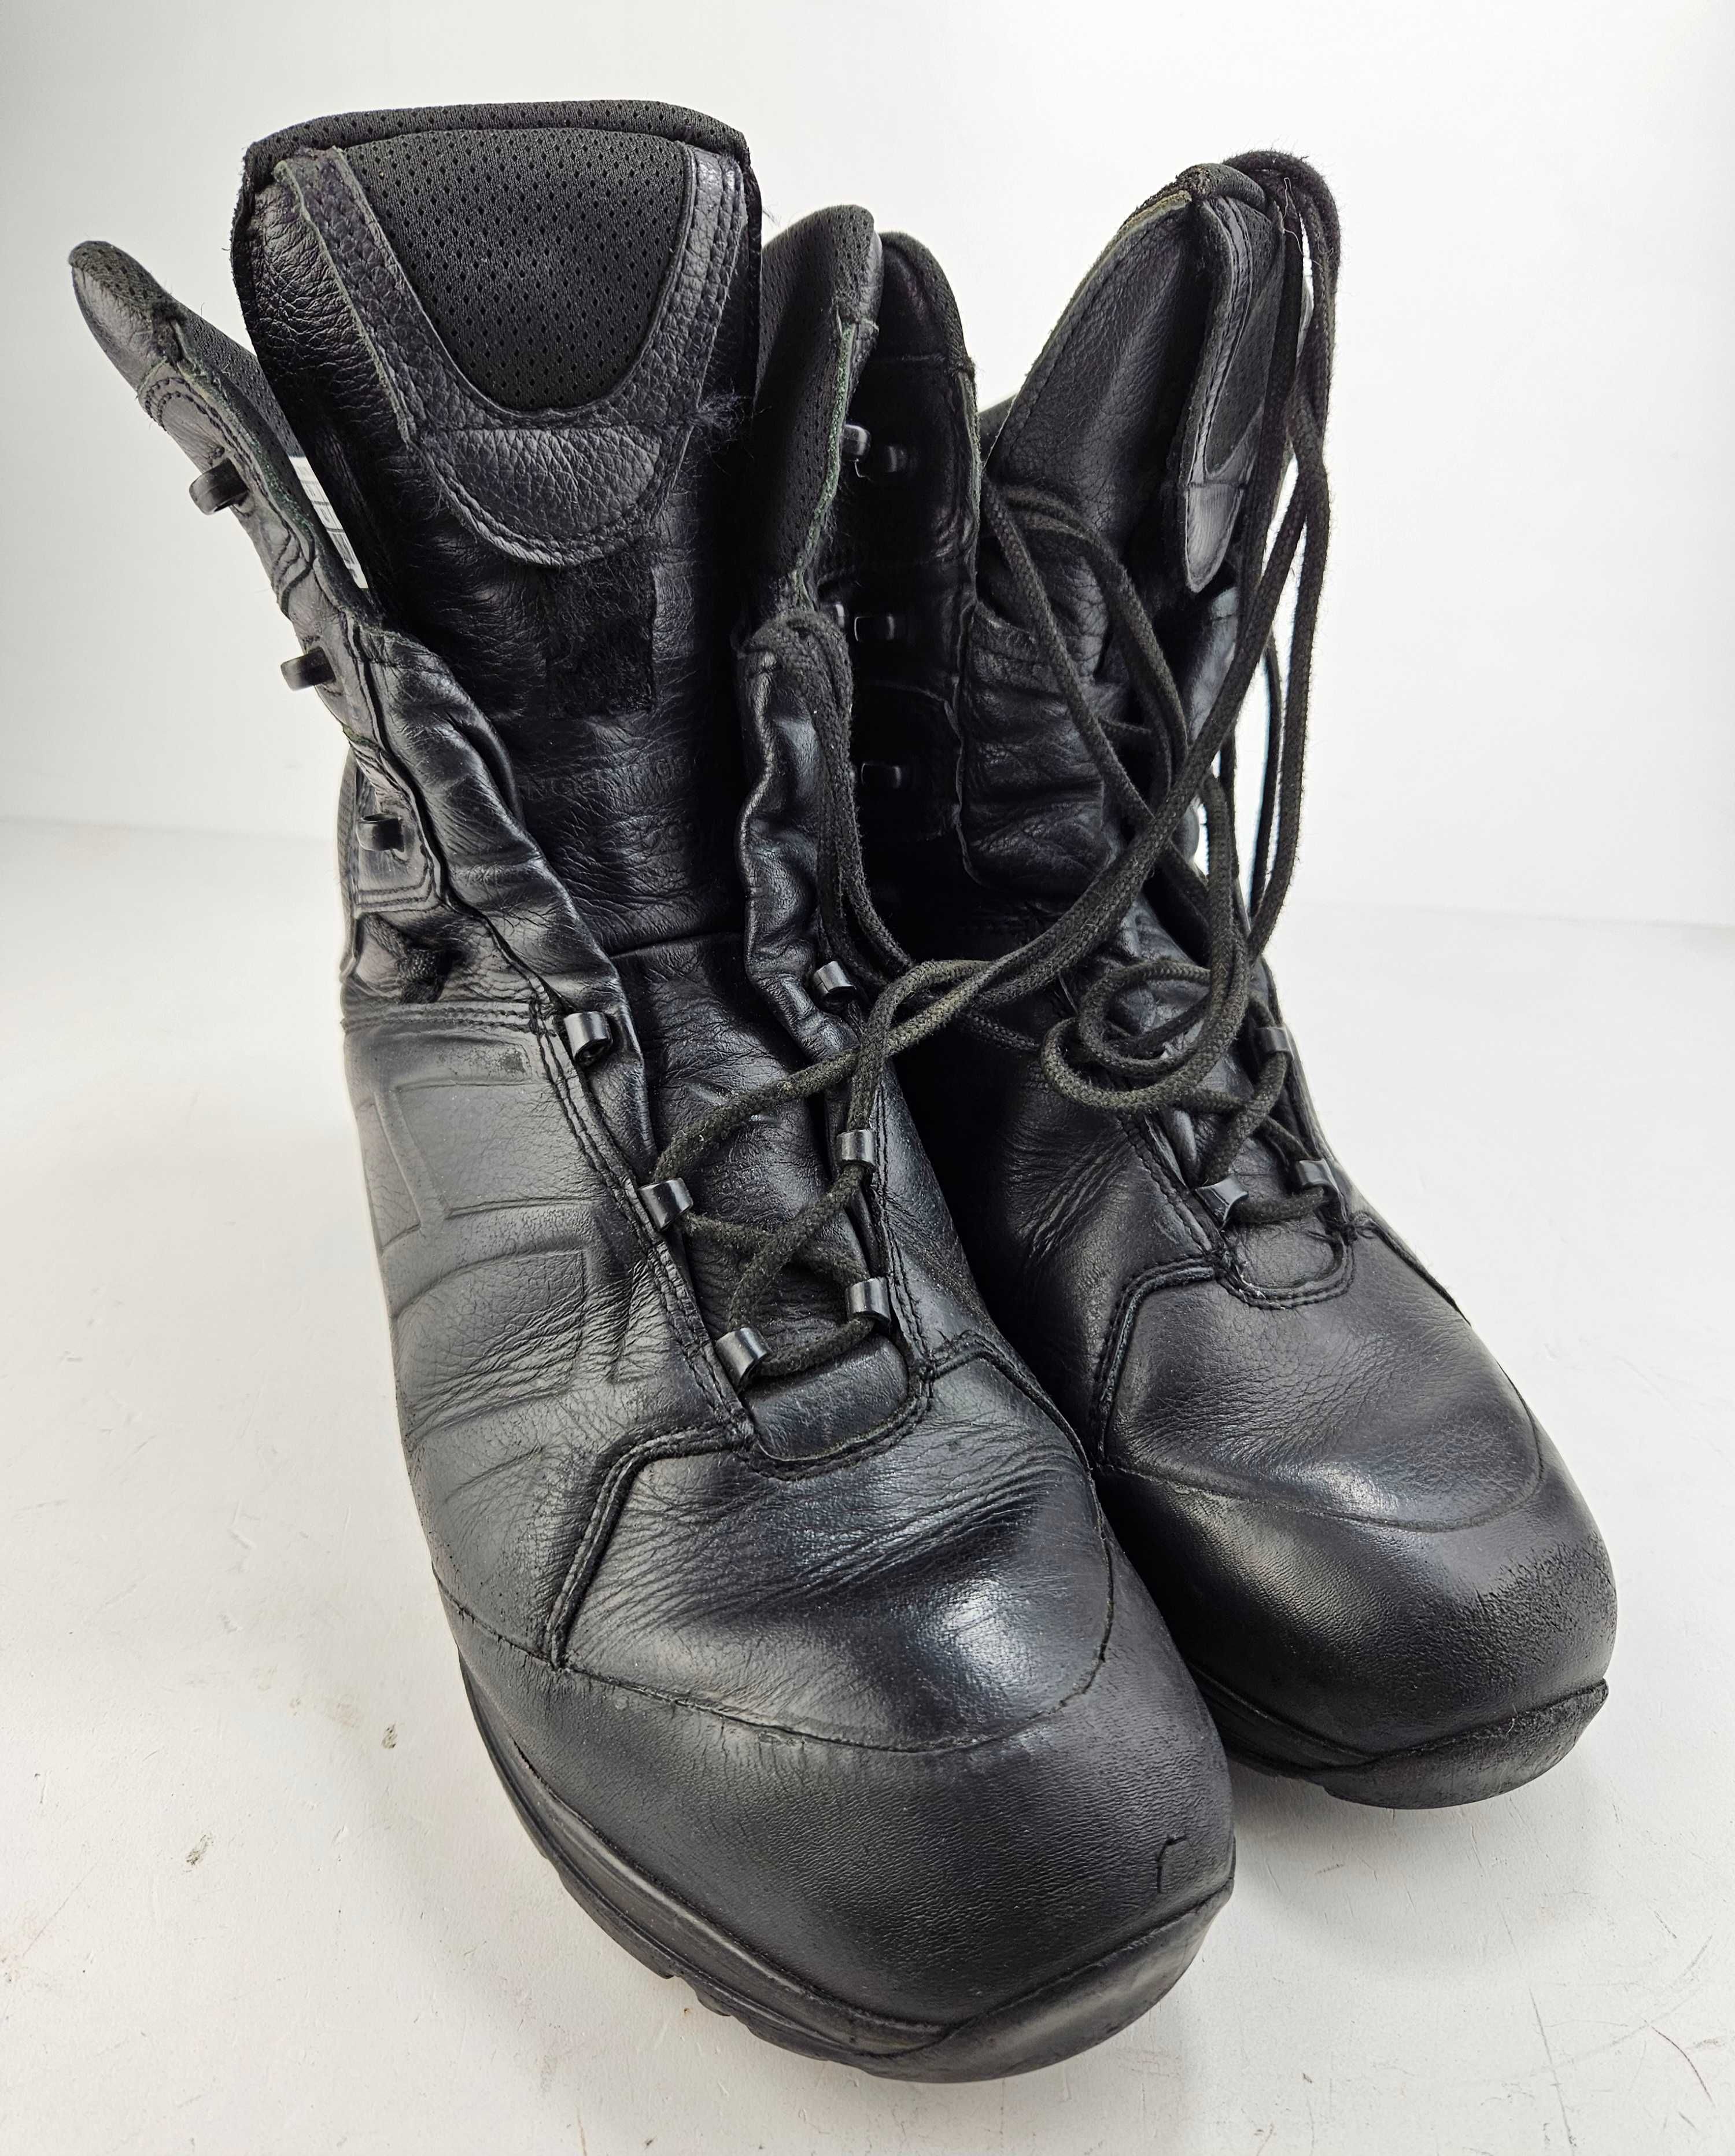 Buty wojskowe HAIX Ranger rozm. 43